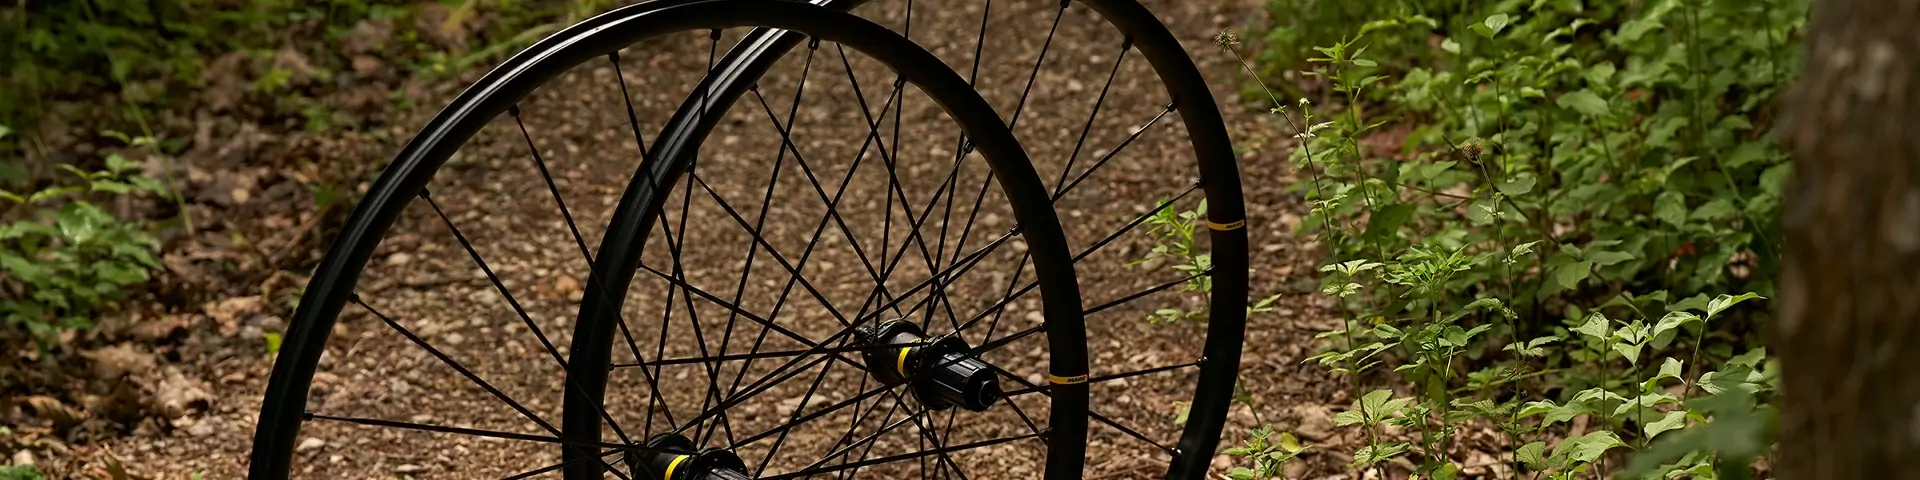 E-bike wheels